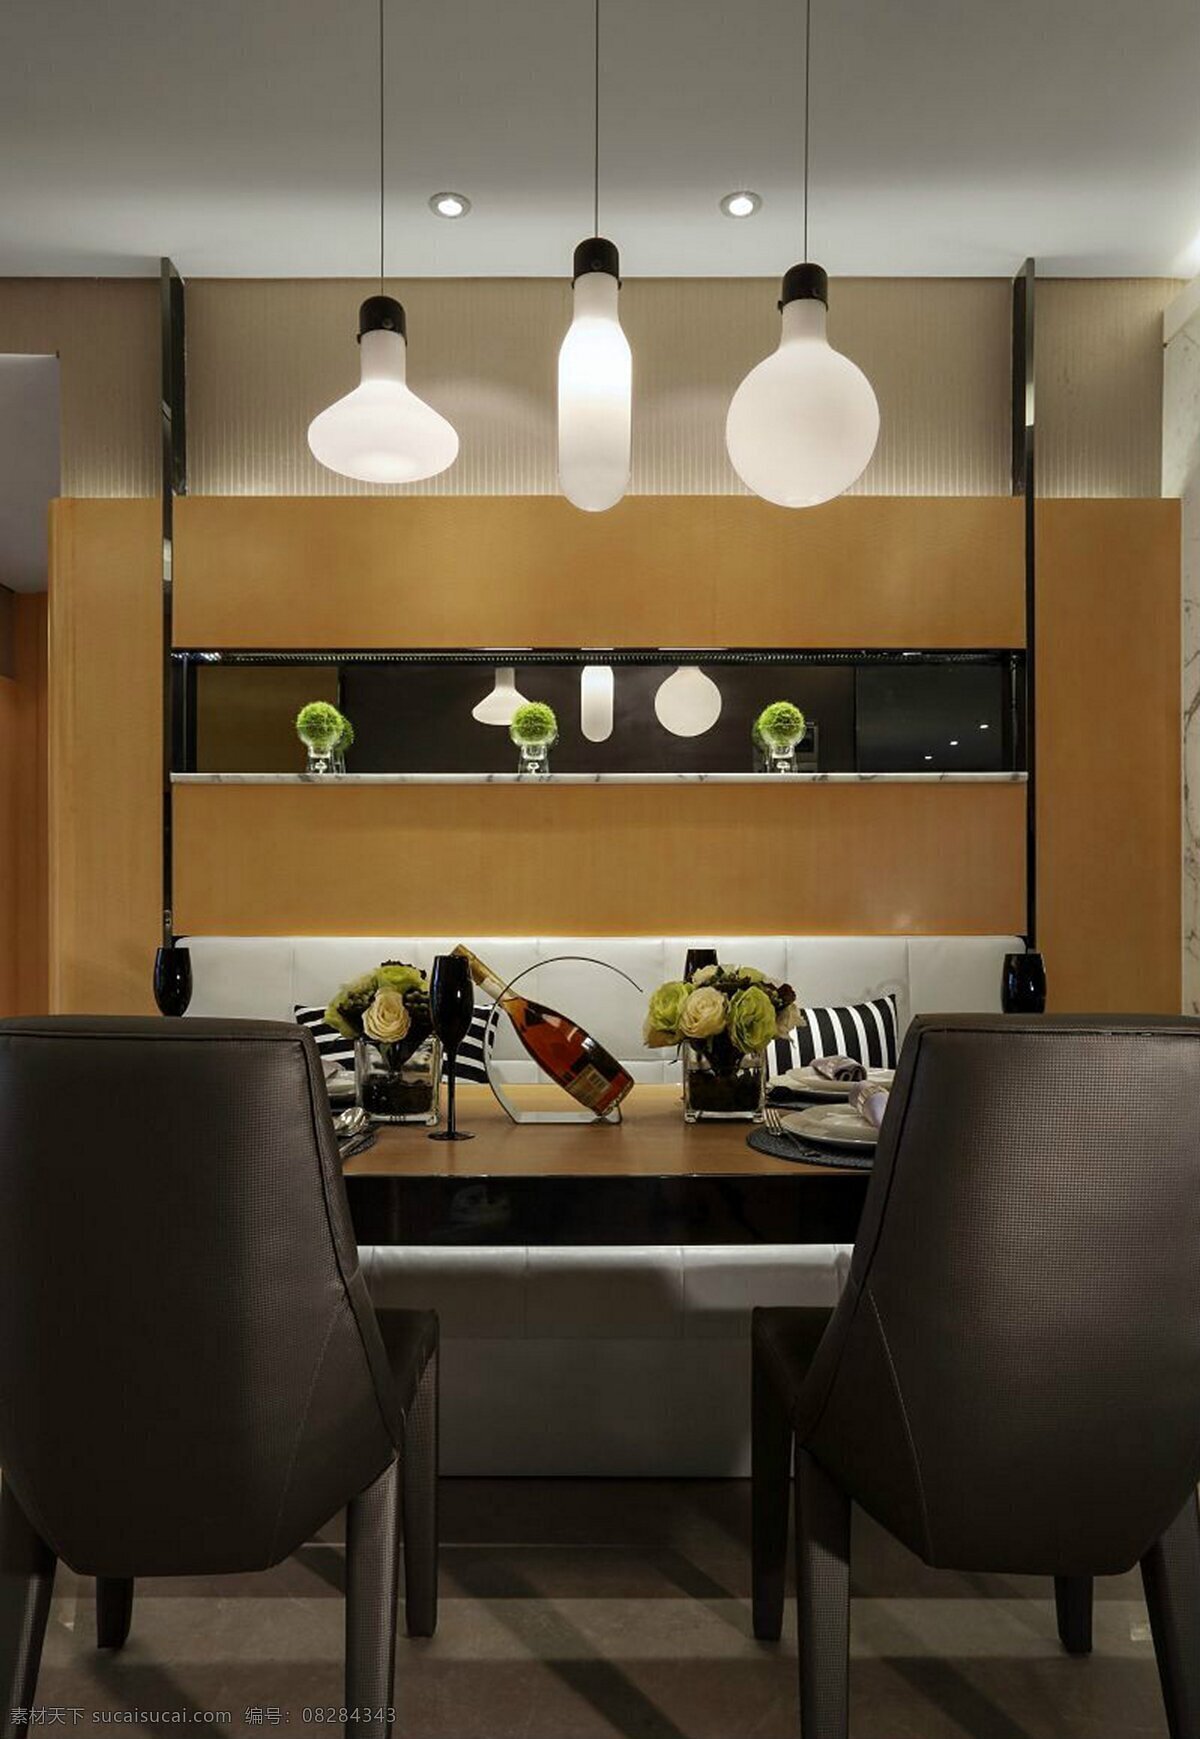 现代 简约 风 室内设计 餐厅 效果图 家装 家居 家具 餐桌 吊灯